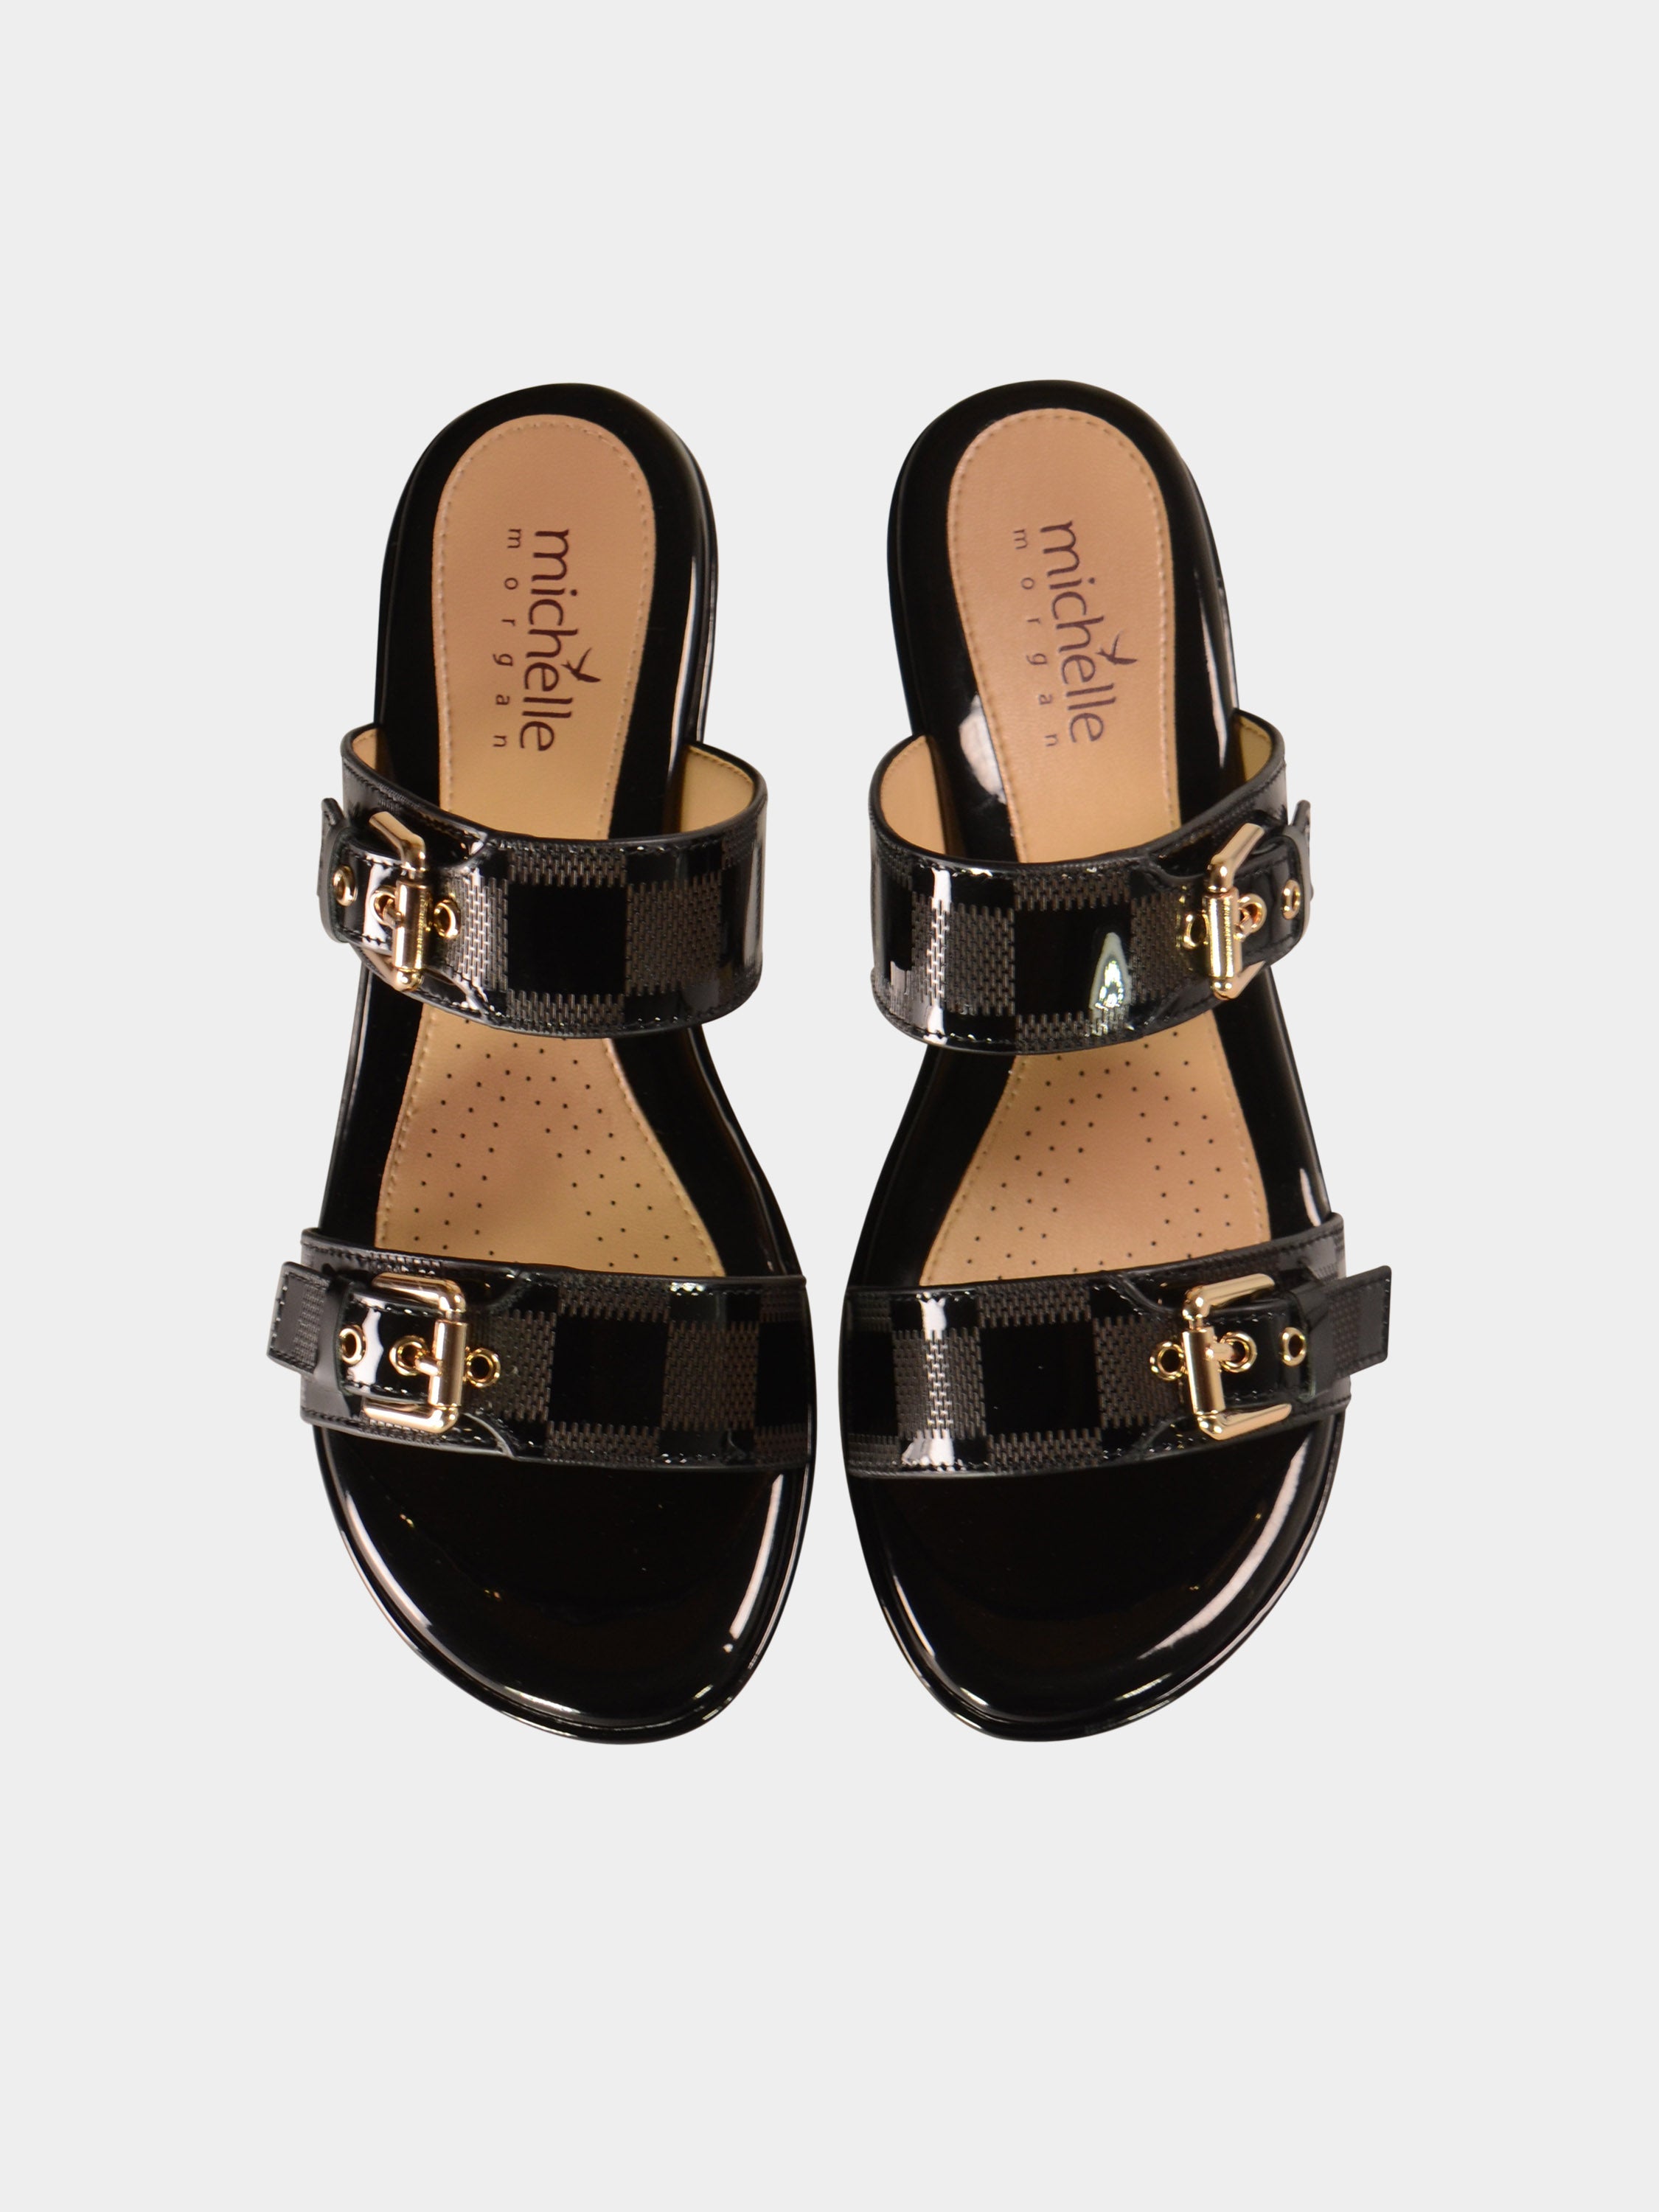 Michelle Morgan 780-8 Women's Wedge Sandals #color_Black